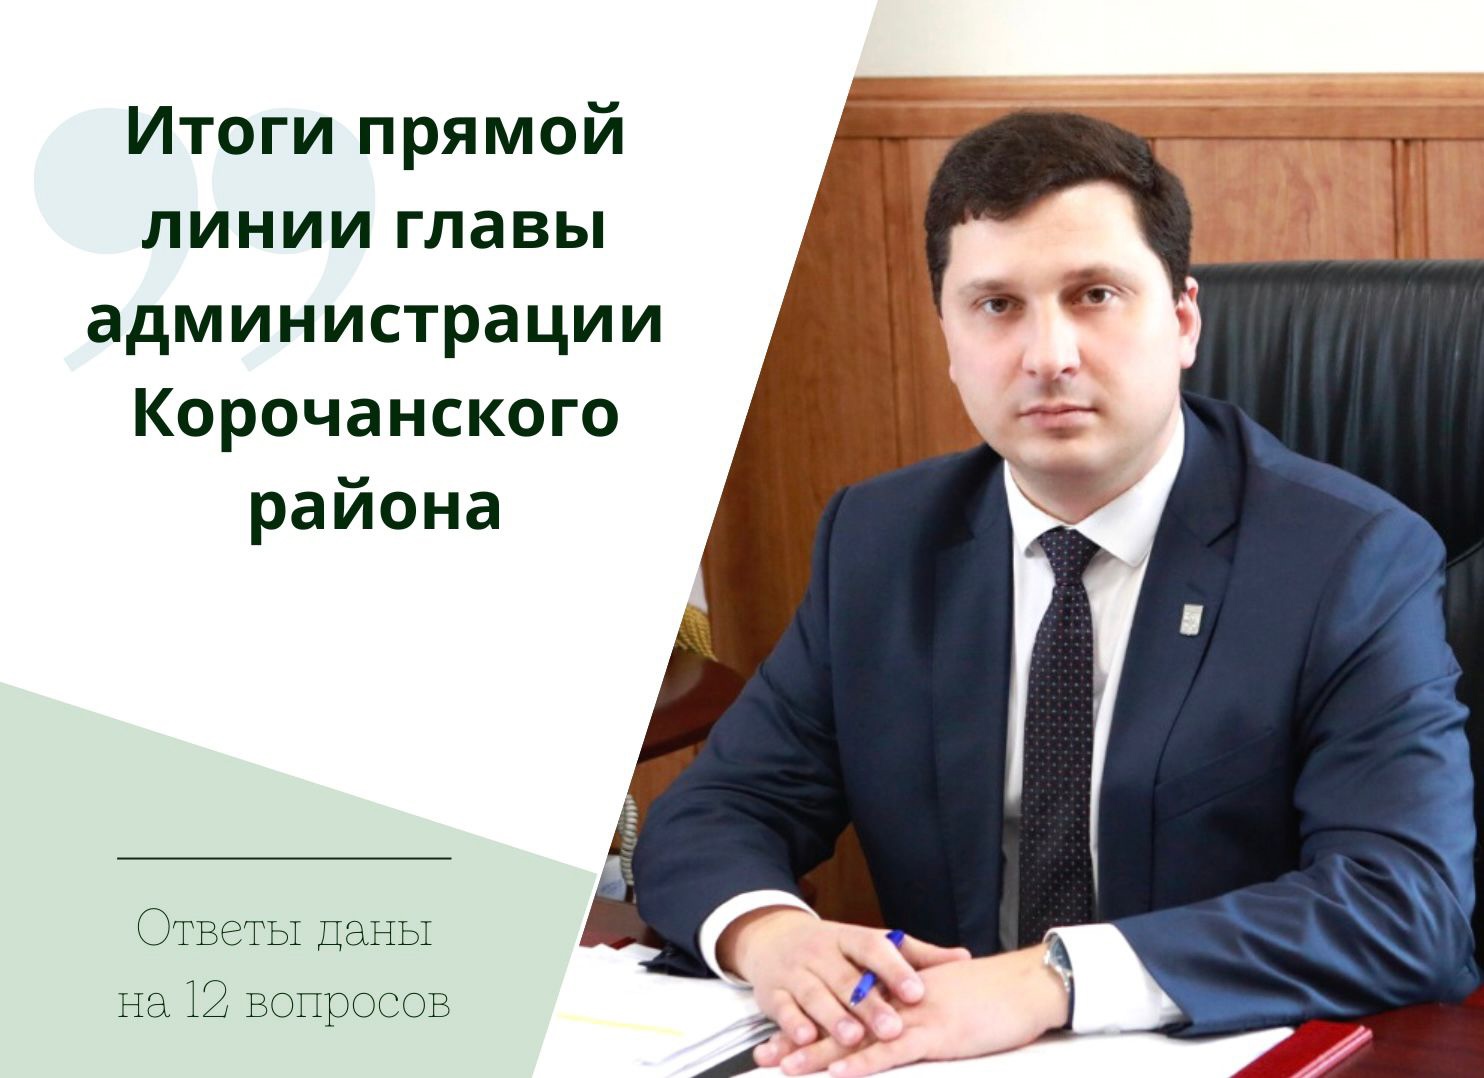 В ходе прямой линии глава администрации района Николай Васильевич Нестеров ответил на 12 вопросов